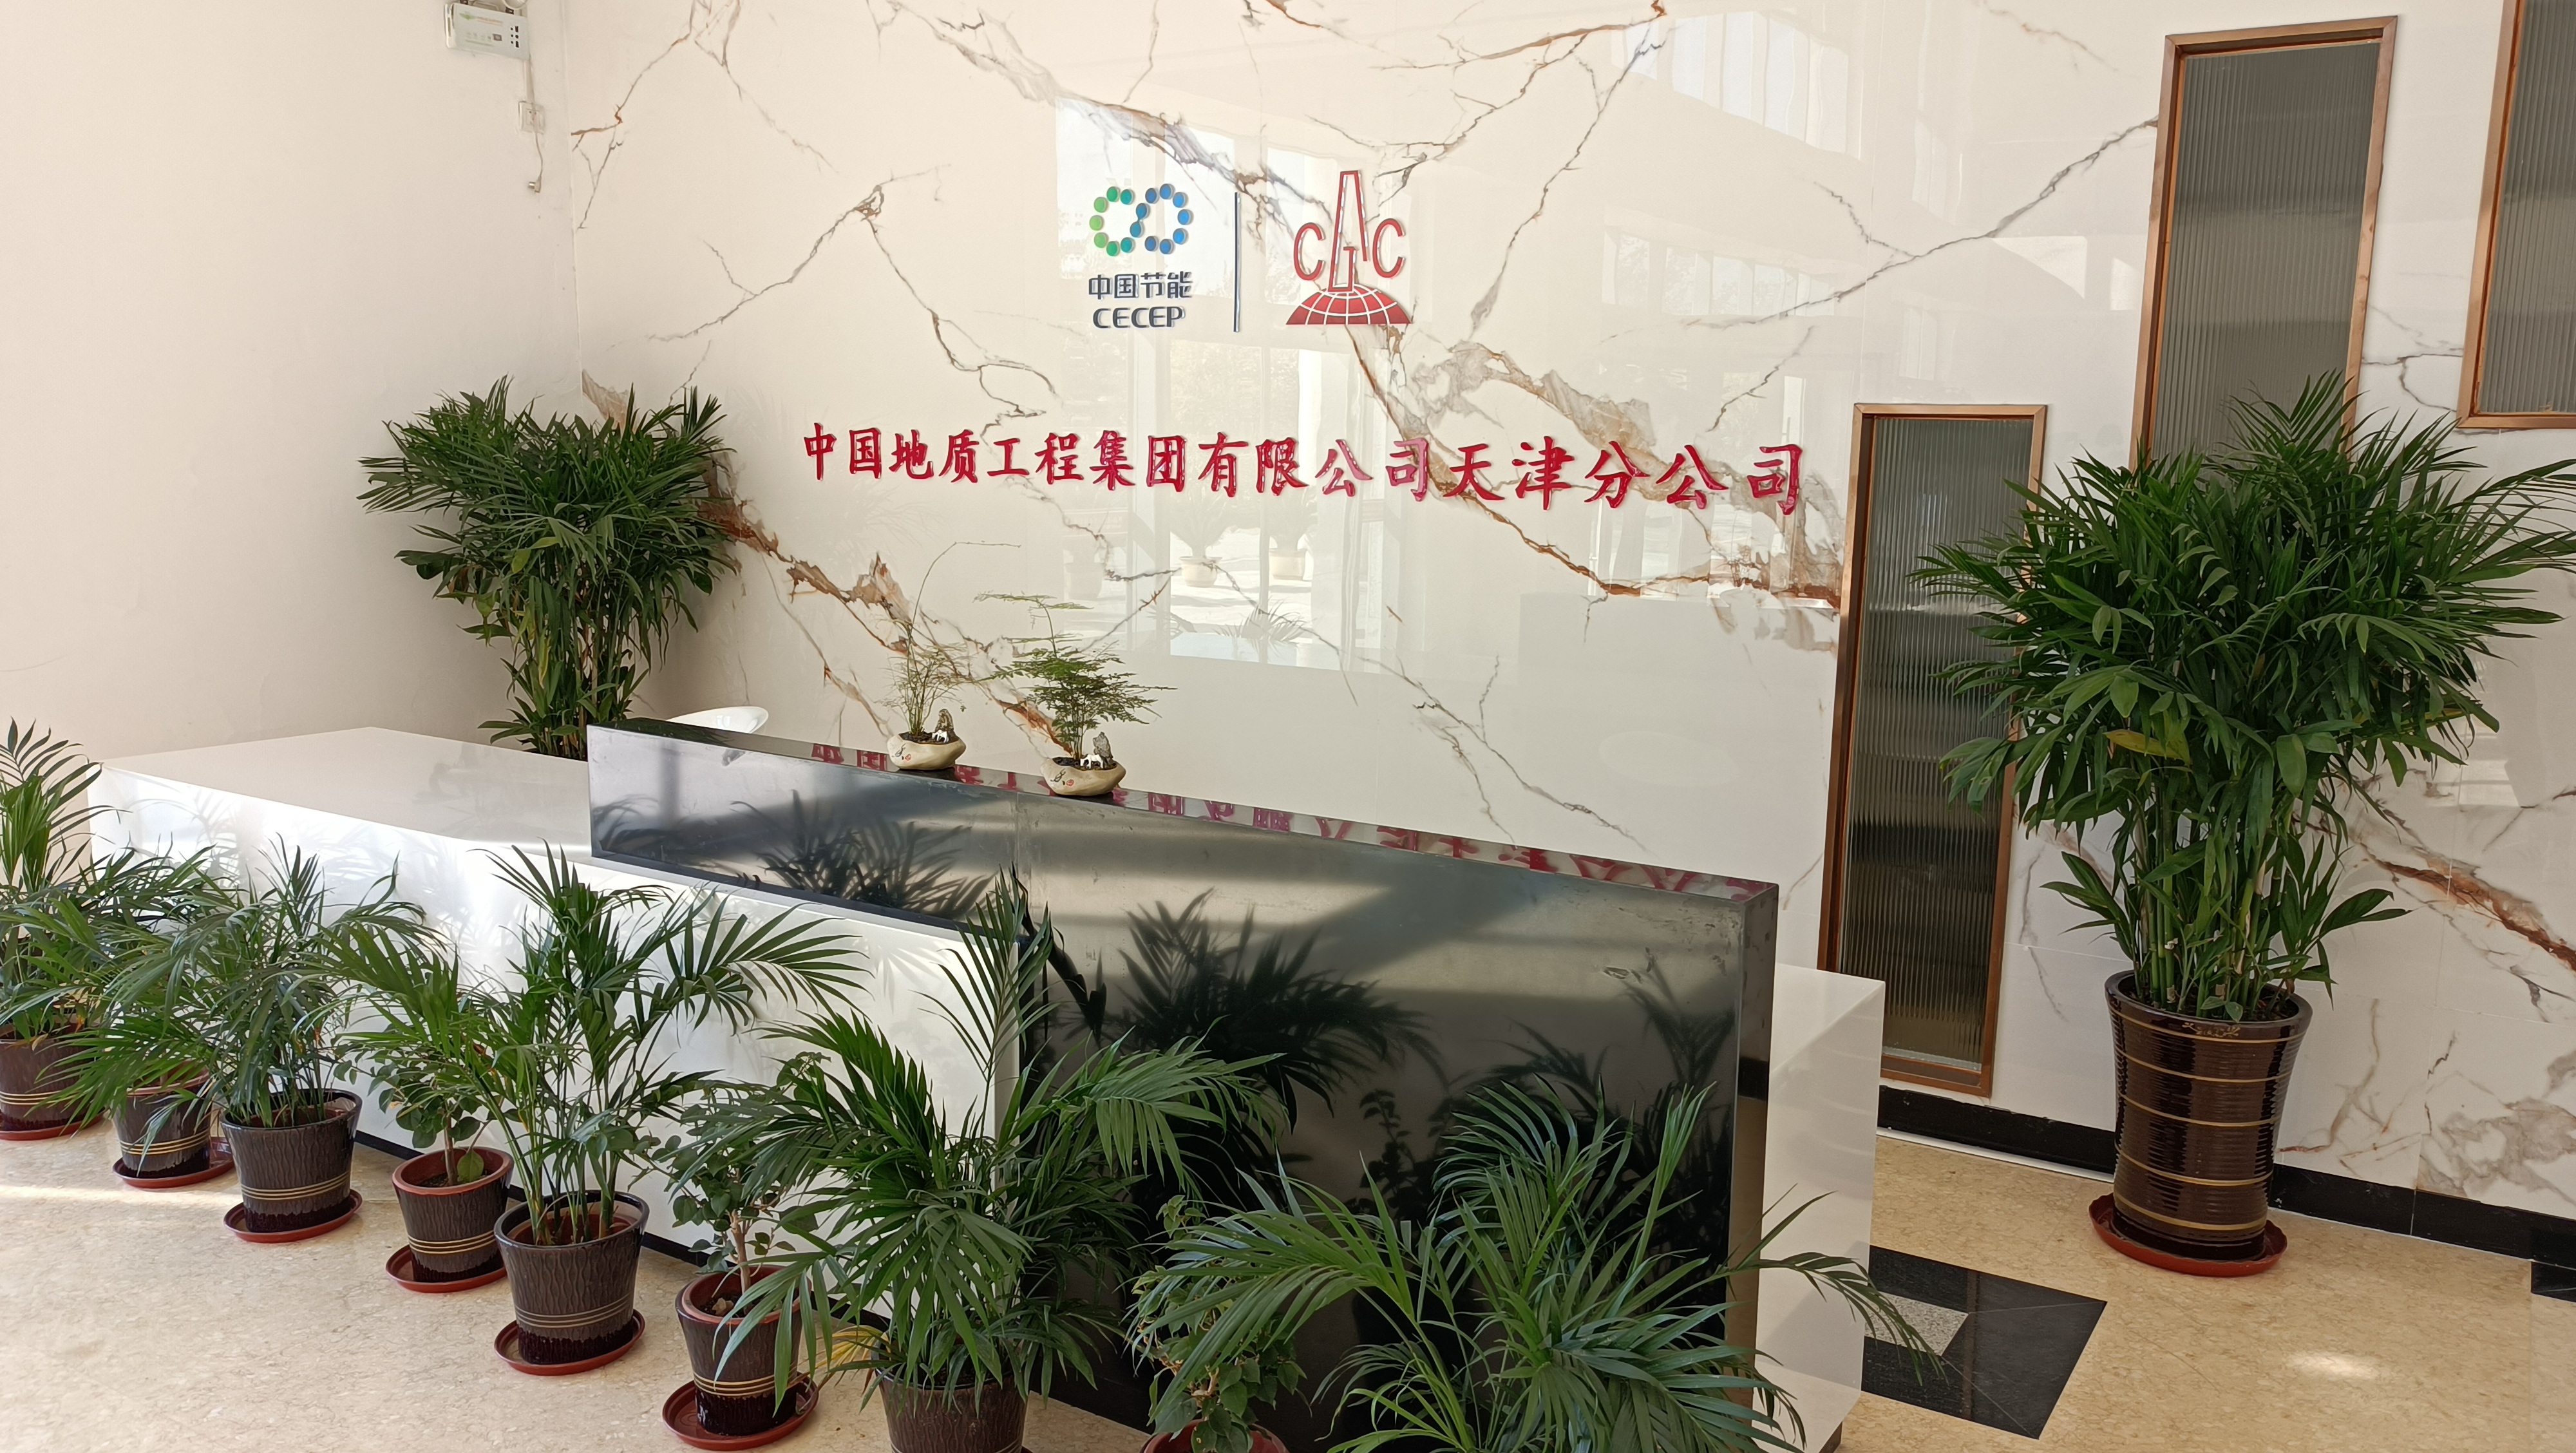 天津滨海创业园林绿化工程有限公司